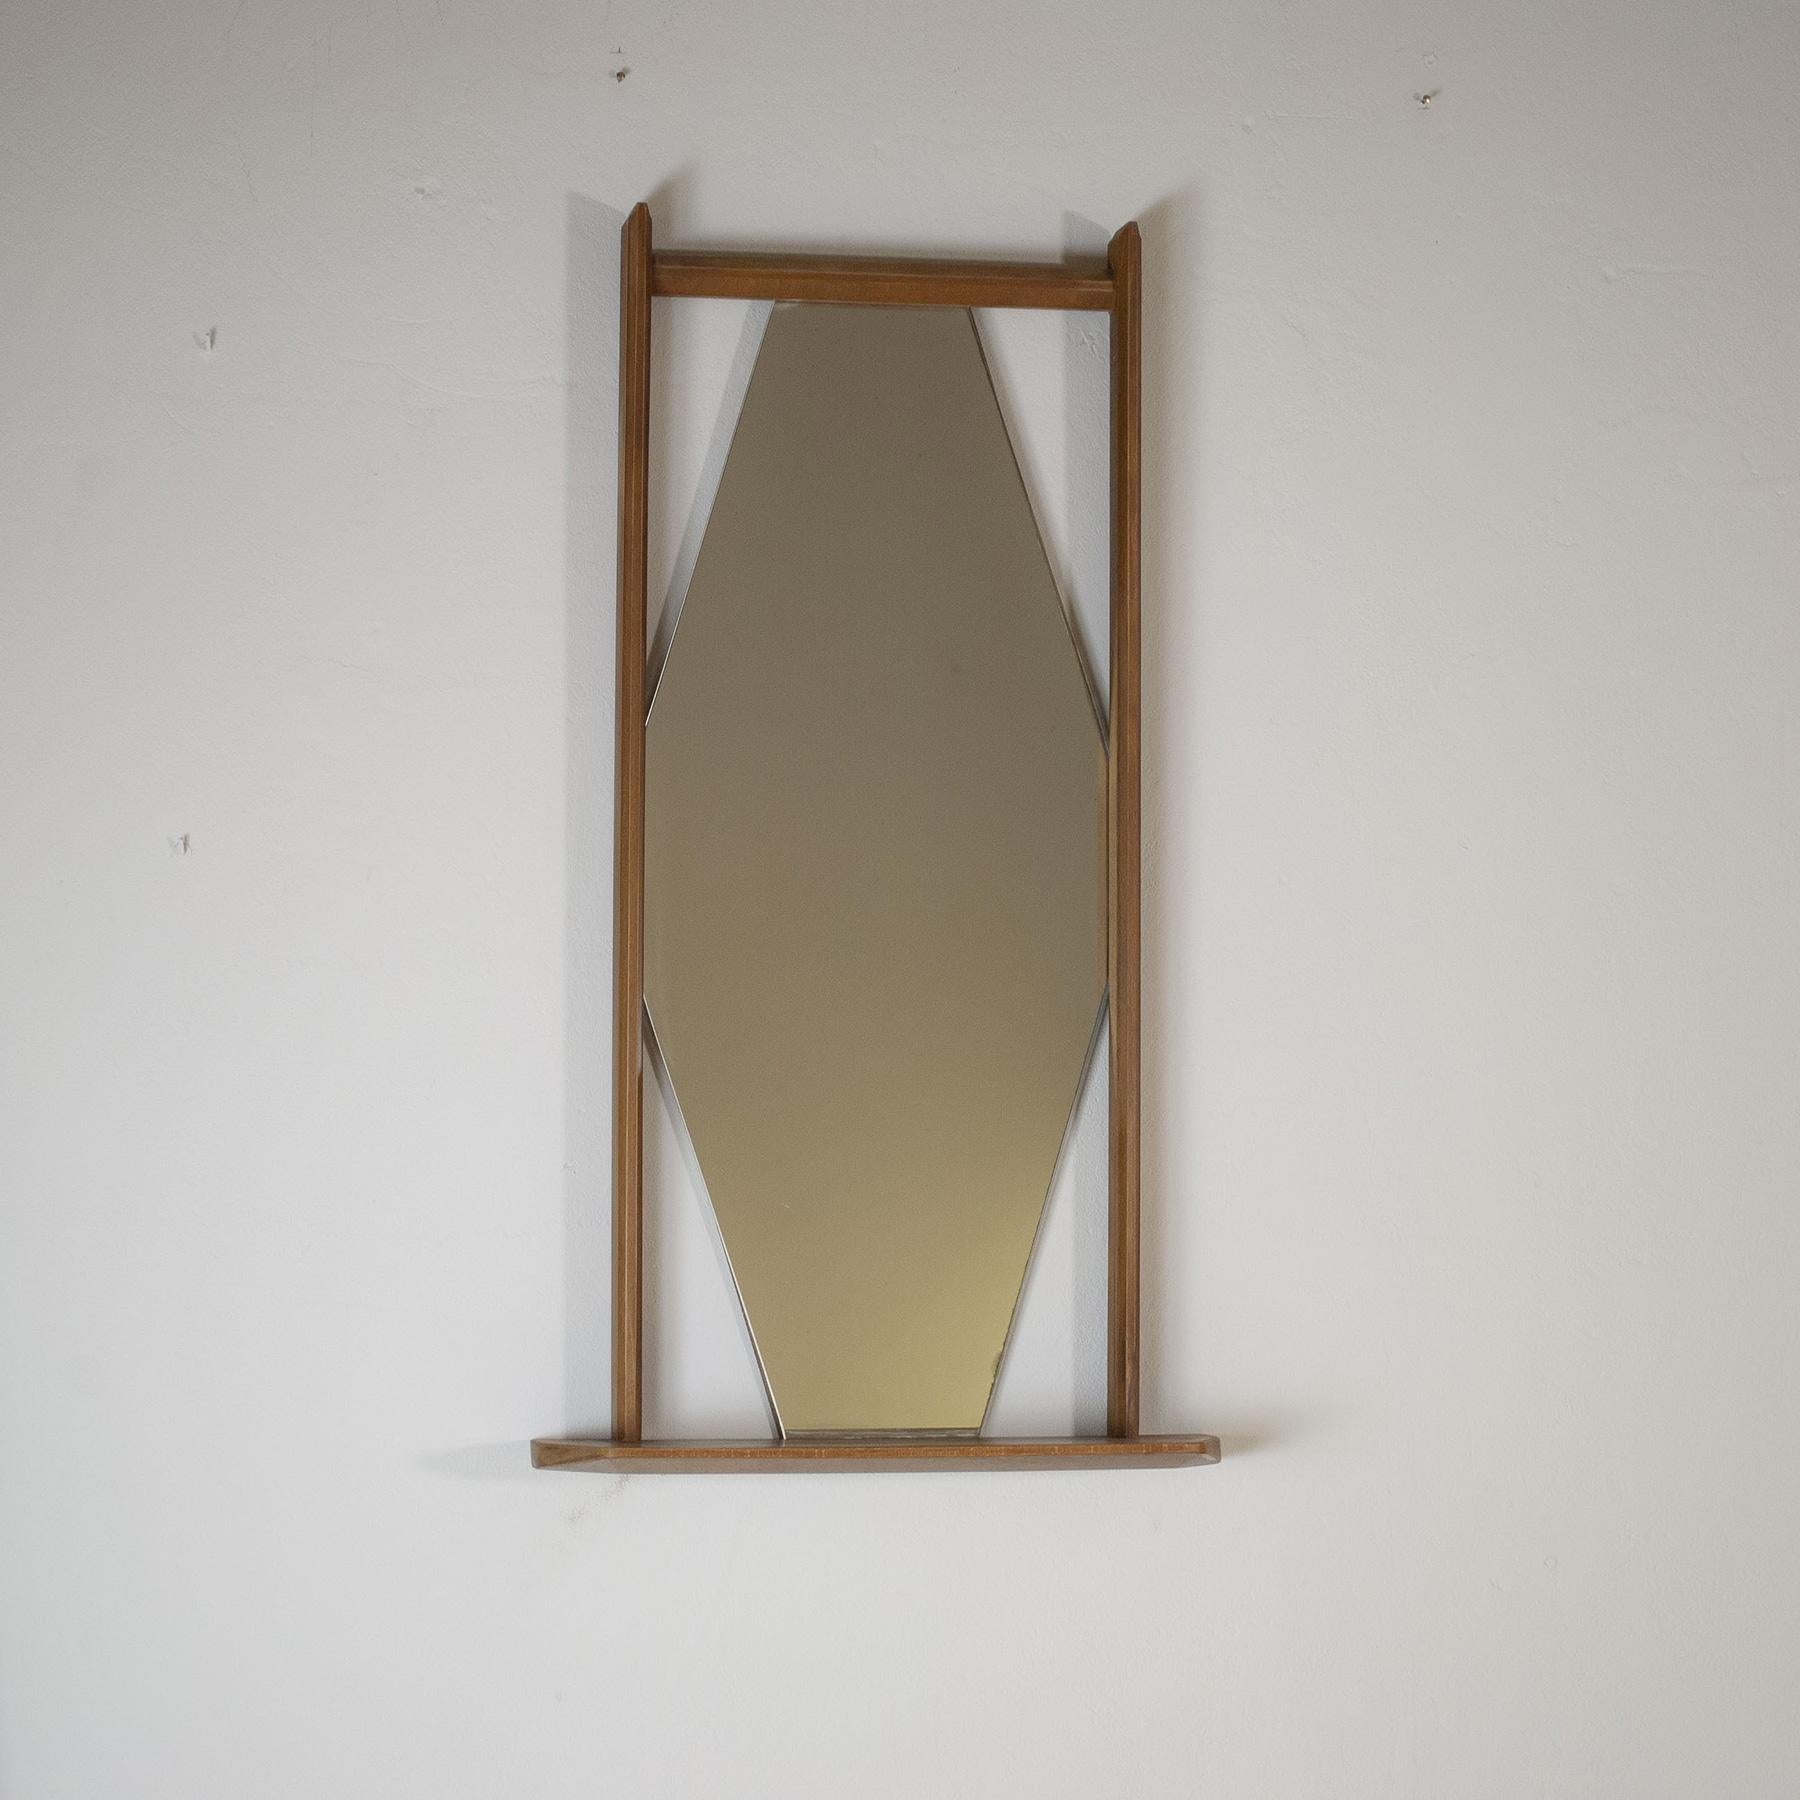 Sechseckiger Spiegel in einem Holzrahmen mit einer kleinen Ablage im Stil des Modells M3 Paraggi von Ico Parsi 1960er Jahre